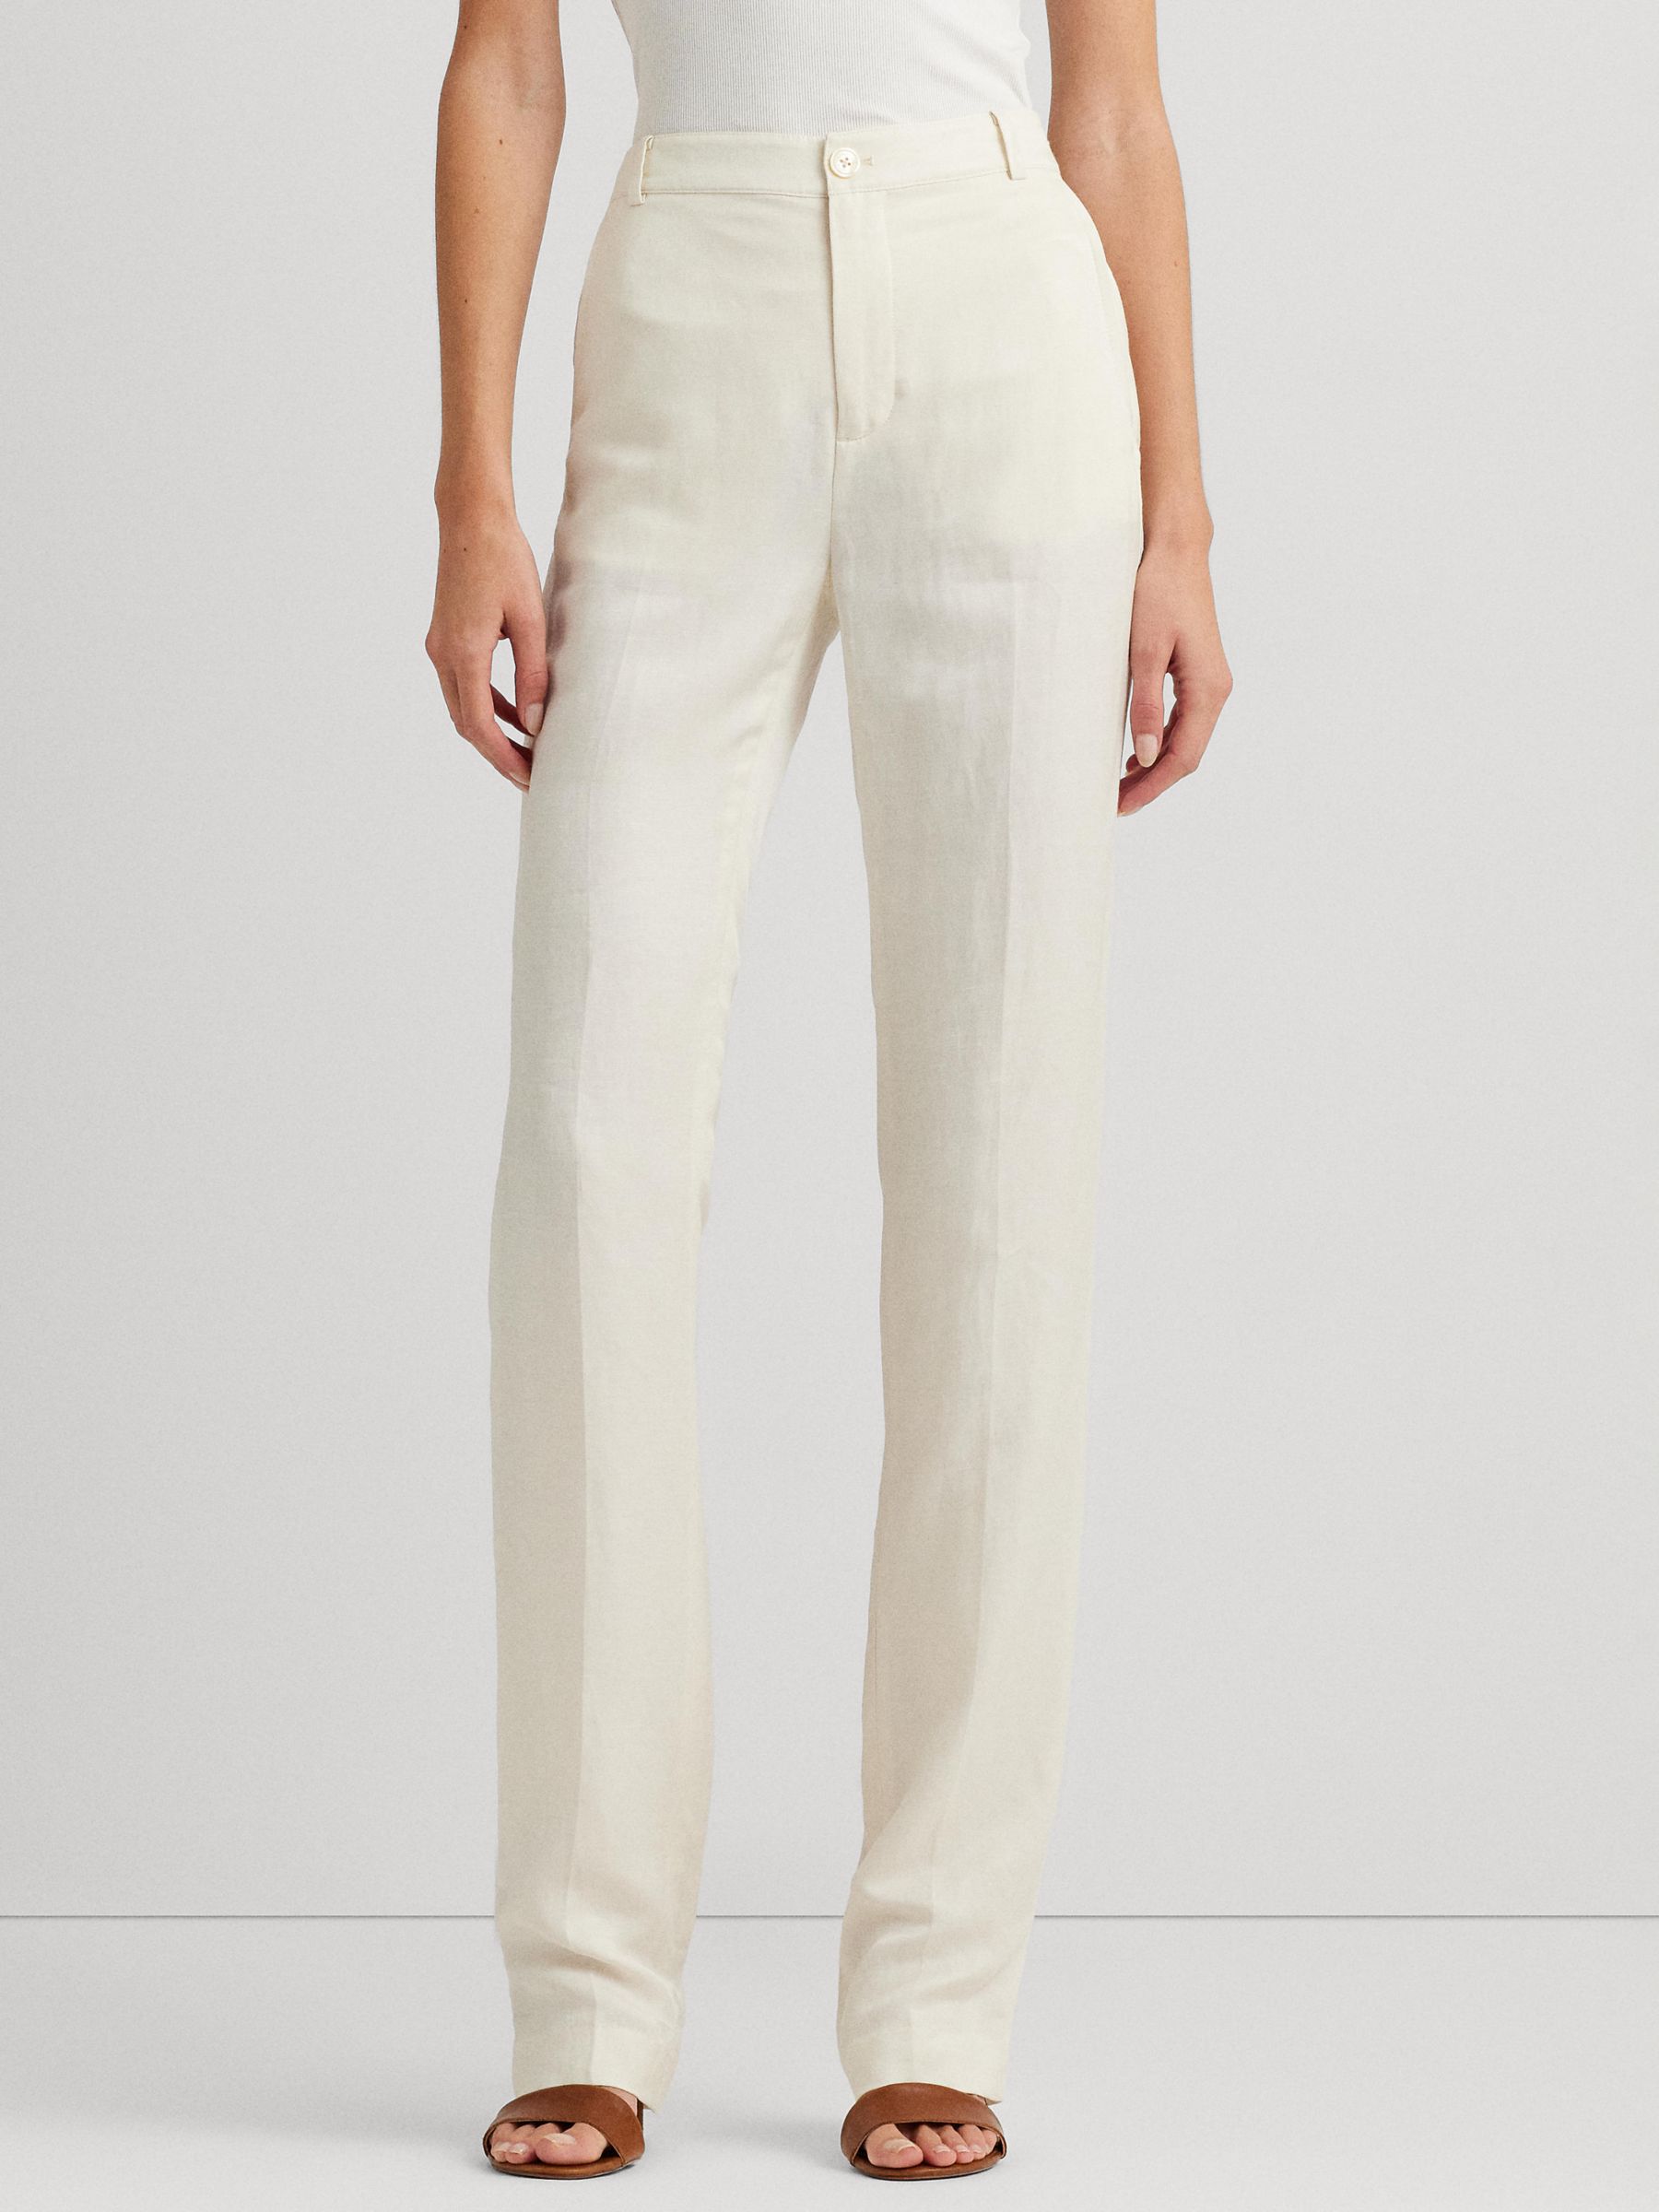 Lauren Ralph Lauren Yonya Linen Blend Twill Trousers, Natural Cream, 8